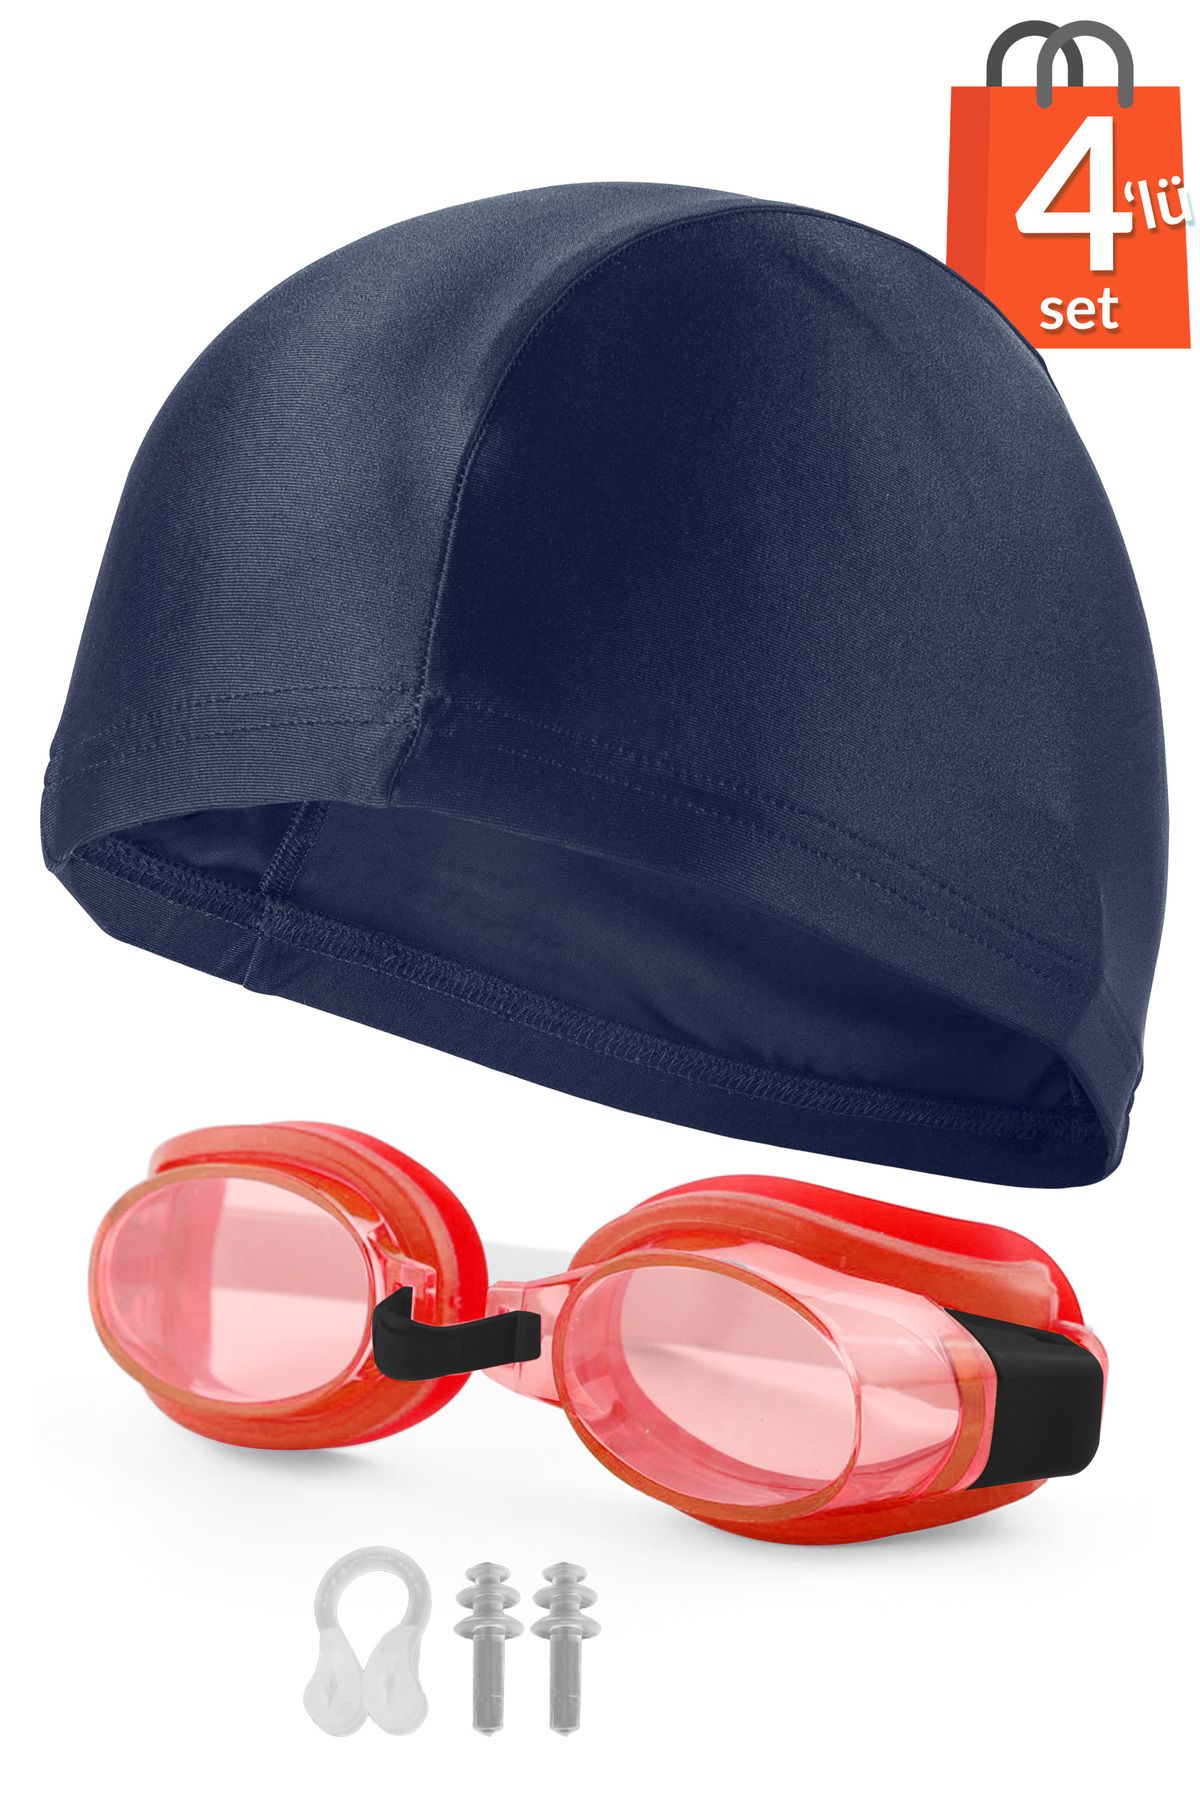 Telvesse 4lü Set Yüzücü Gözlüğü Kumaş Bone Kulak Ve Burun Tıkaçlı Set Yüzme Havuz Deniz Gözlüğü Kırmızı